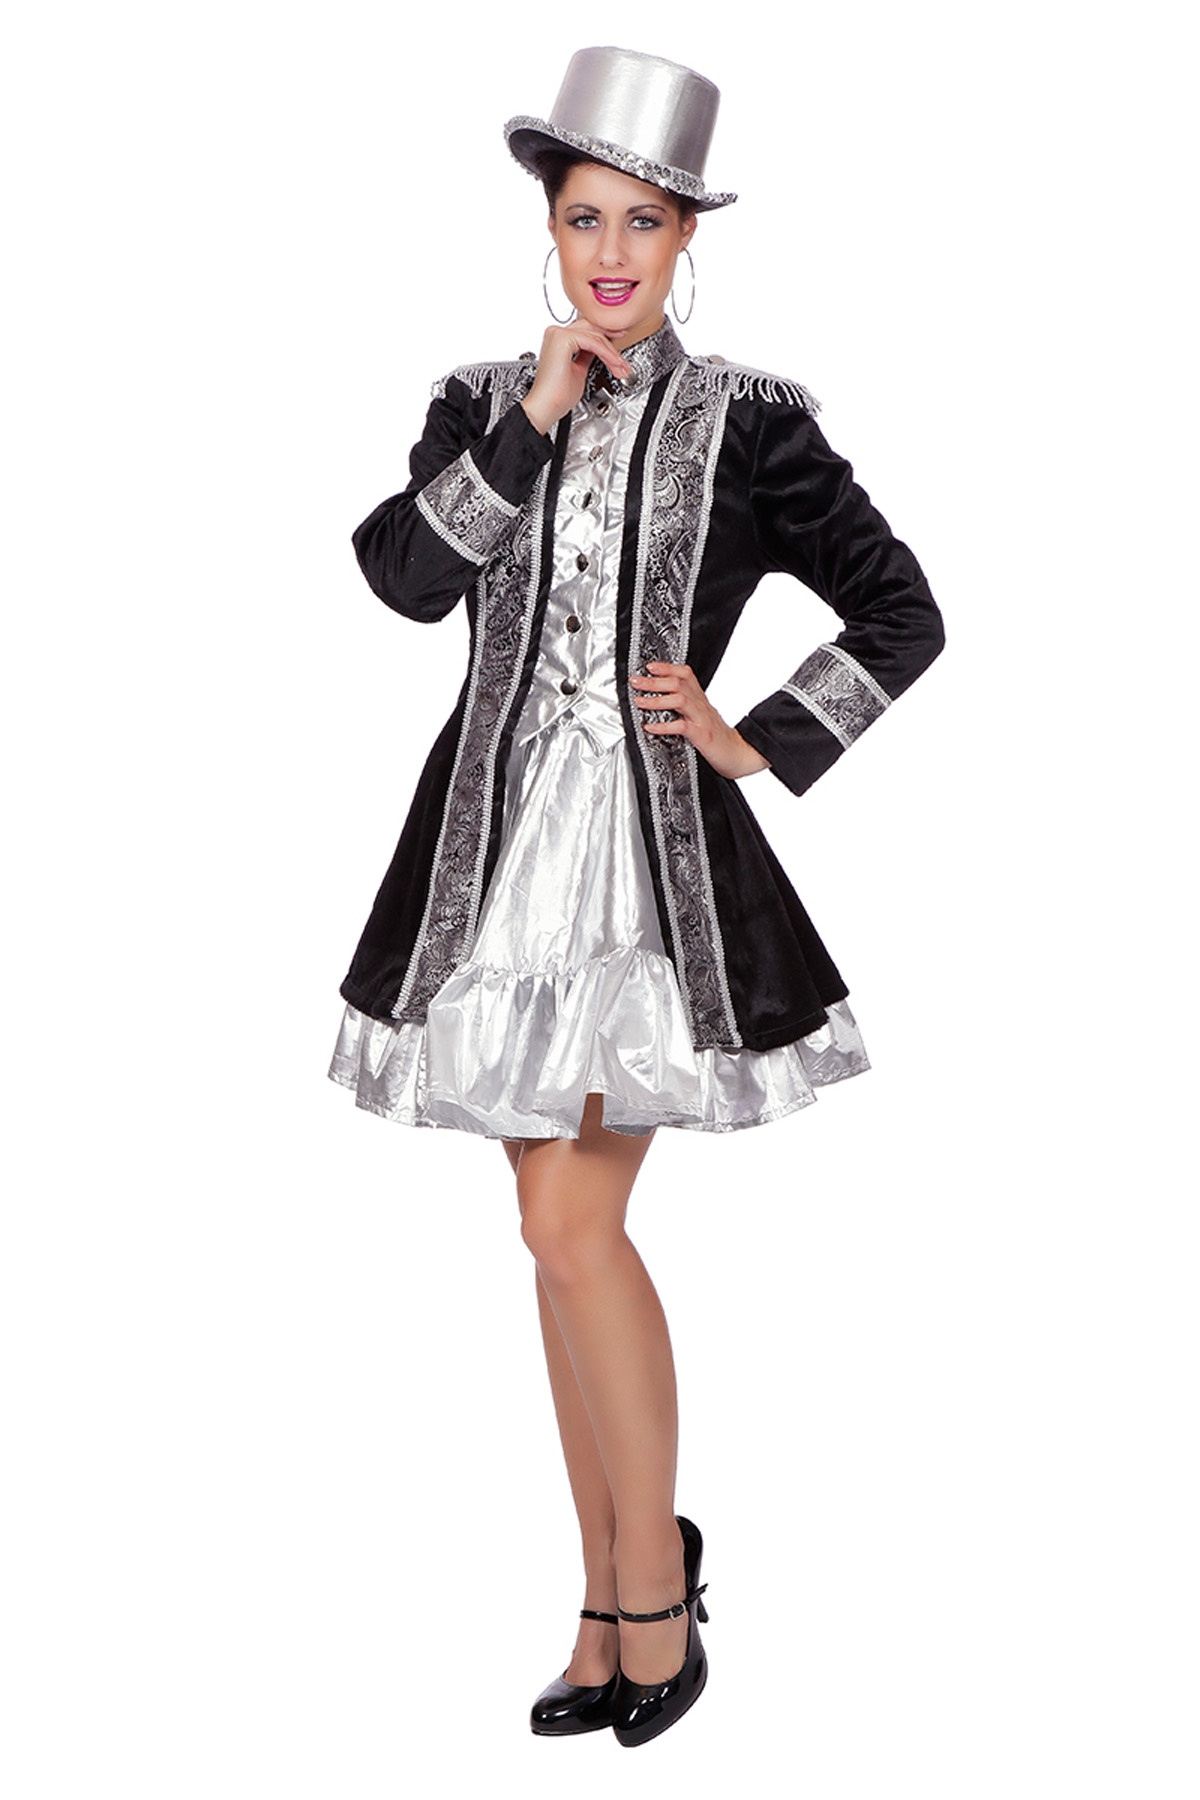 Wilbers - Jaren 20 Danseressen Kostuum - Showgirl Uit Parijs Jas Vrouw - zwart,zilver - Maat 44 - Carnavalskleding - Verkleedkleding